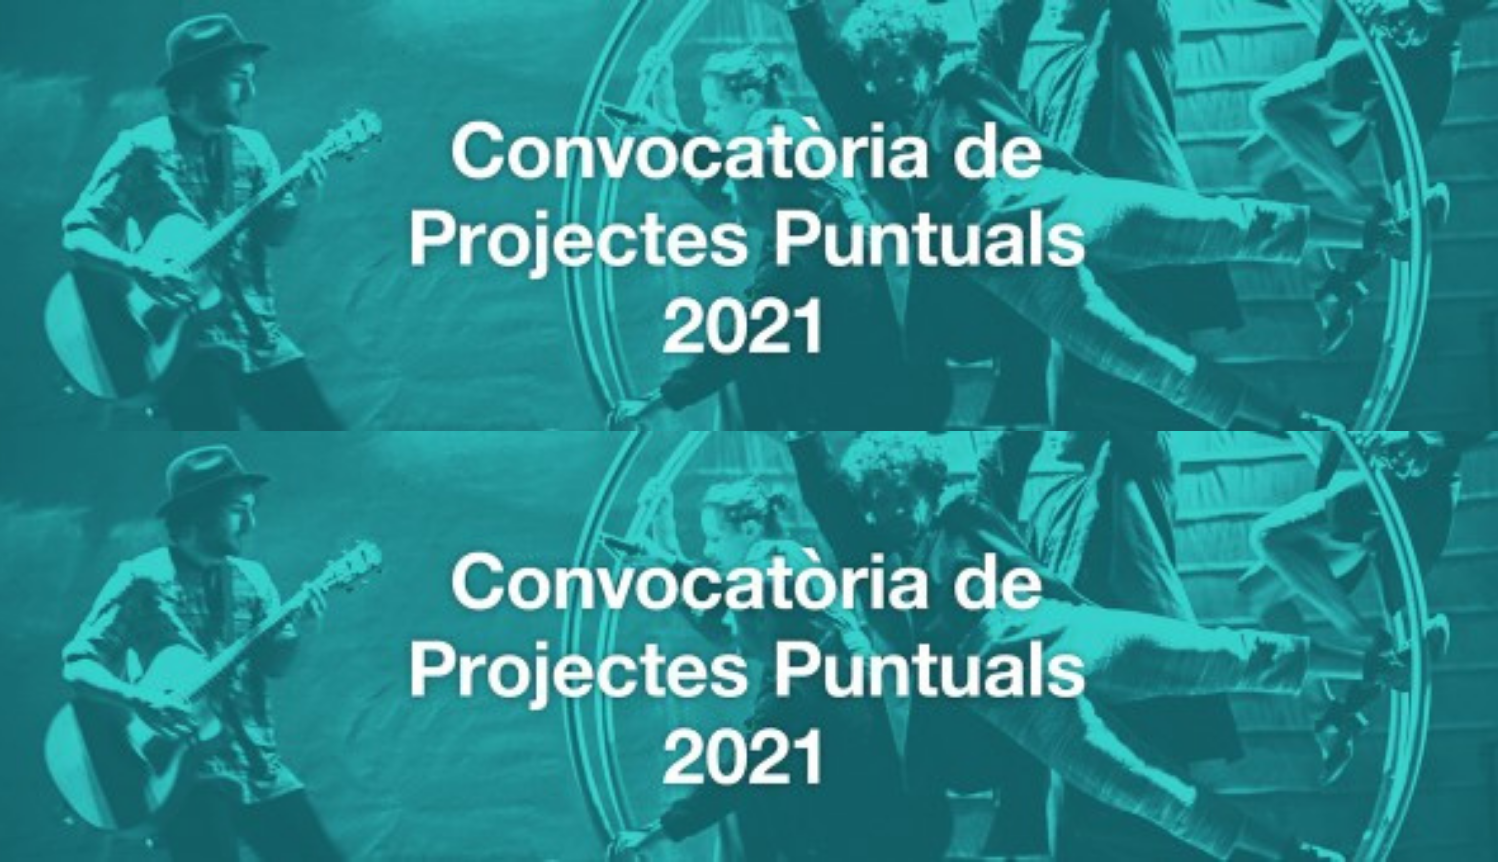 Obert el termini de presentació de sol·licituds de la Convocatòria de Projectes Puntuals 2021